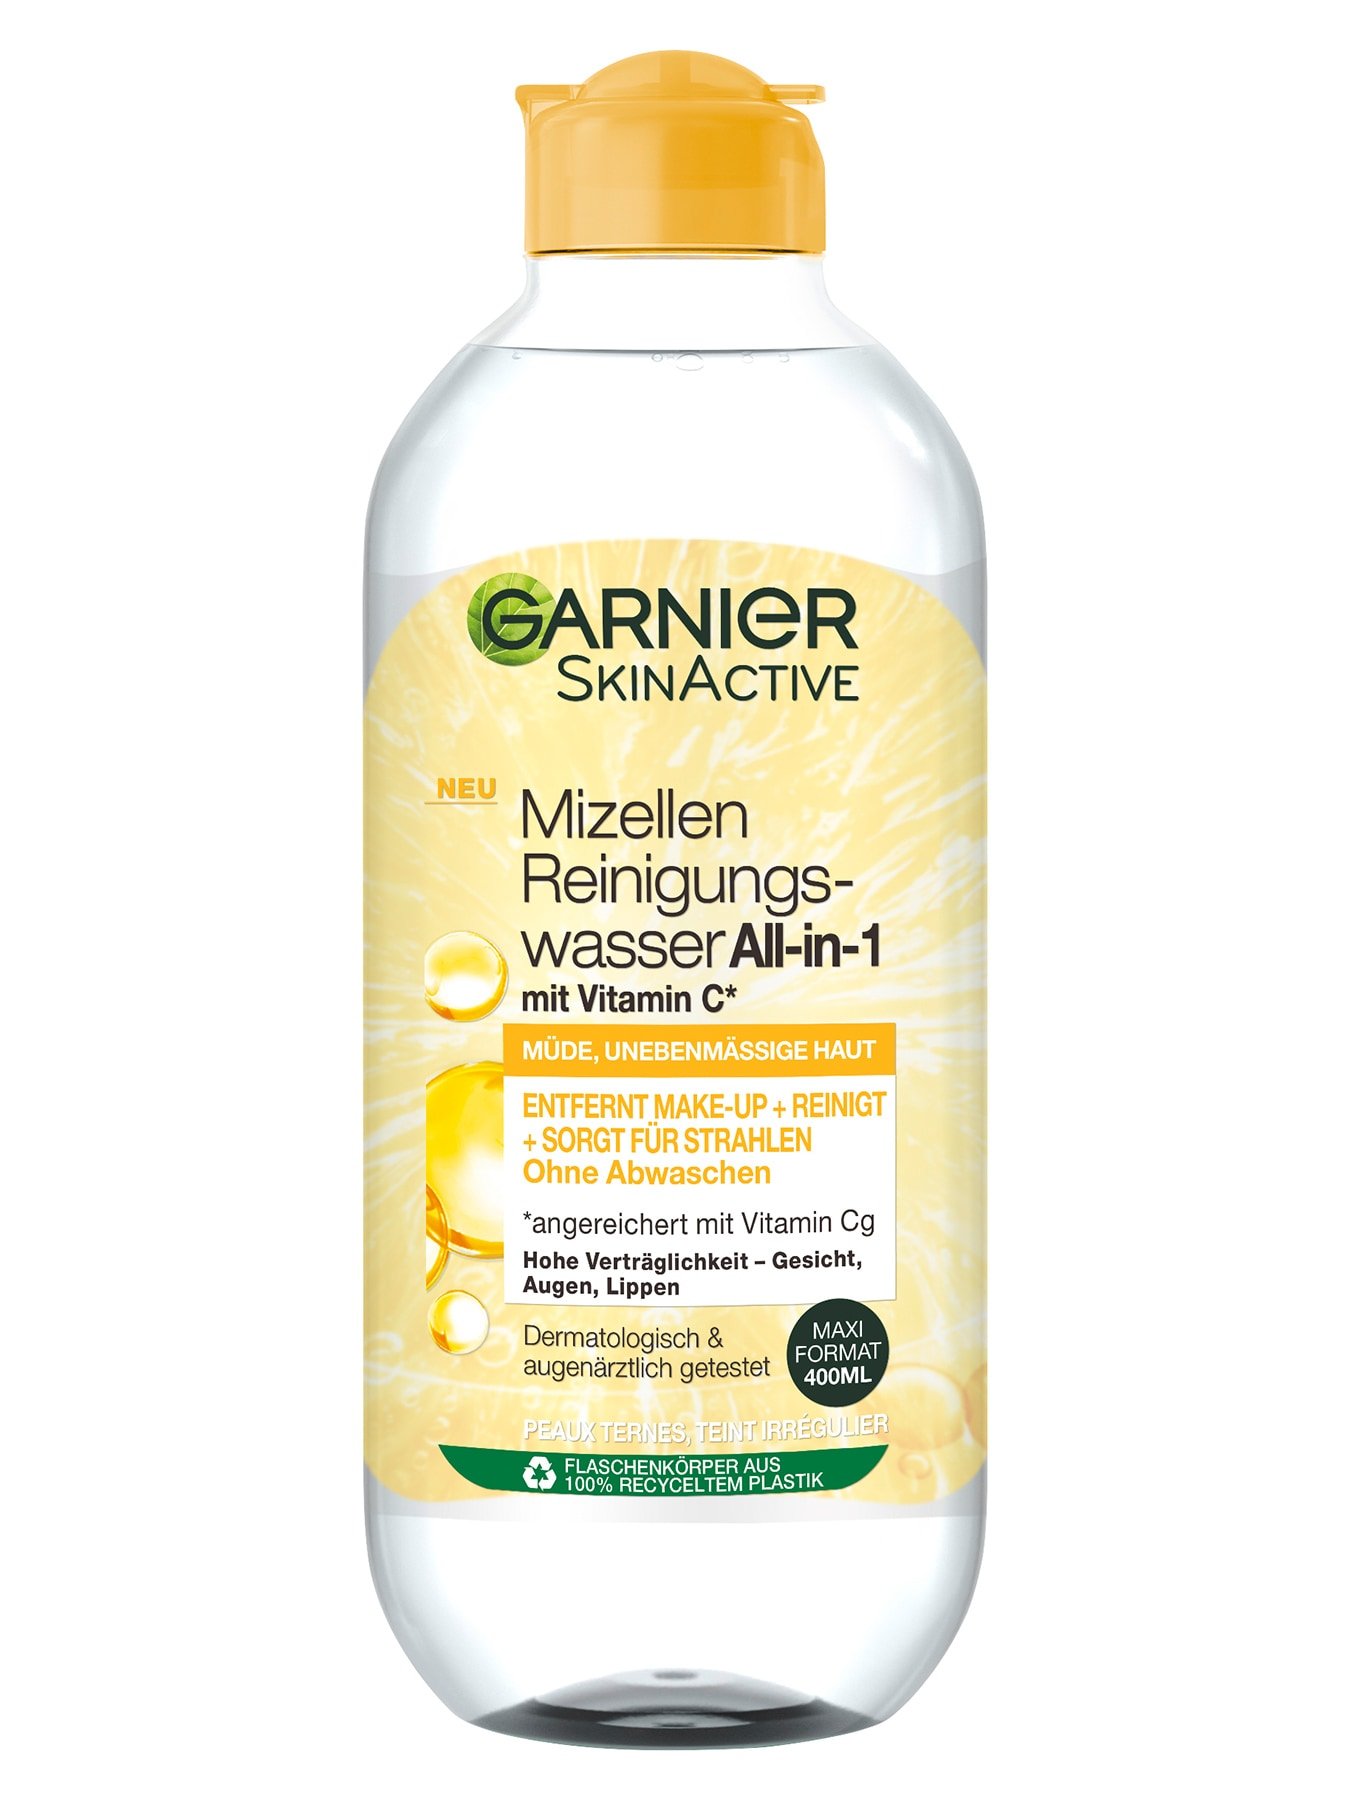 SkinActive Mizellen Reinigungswasser All-in-1 mit Vitamin C - Produktabbildung